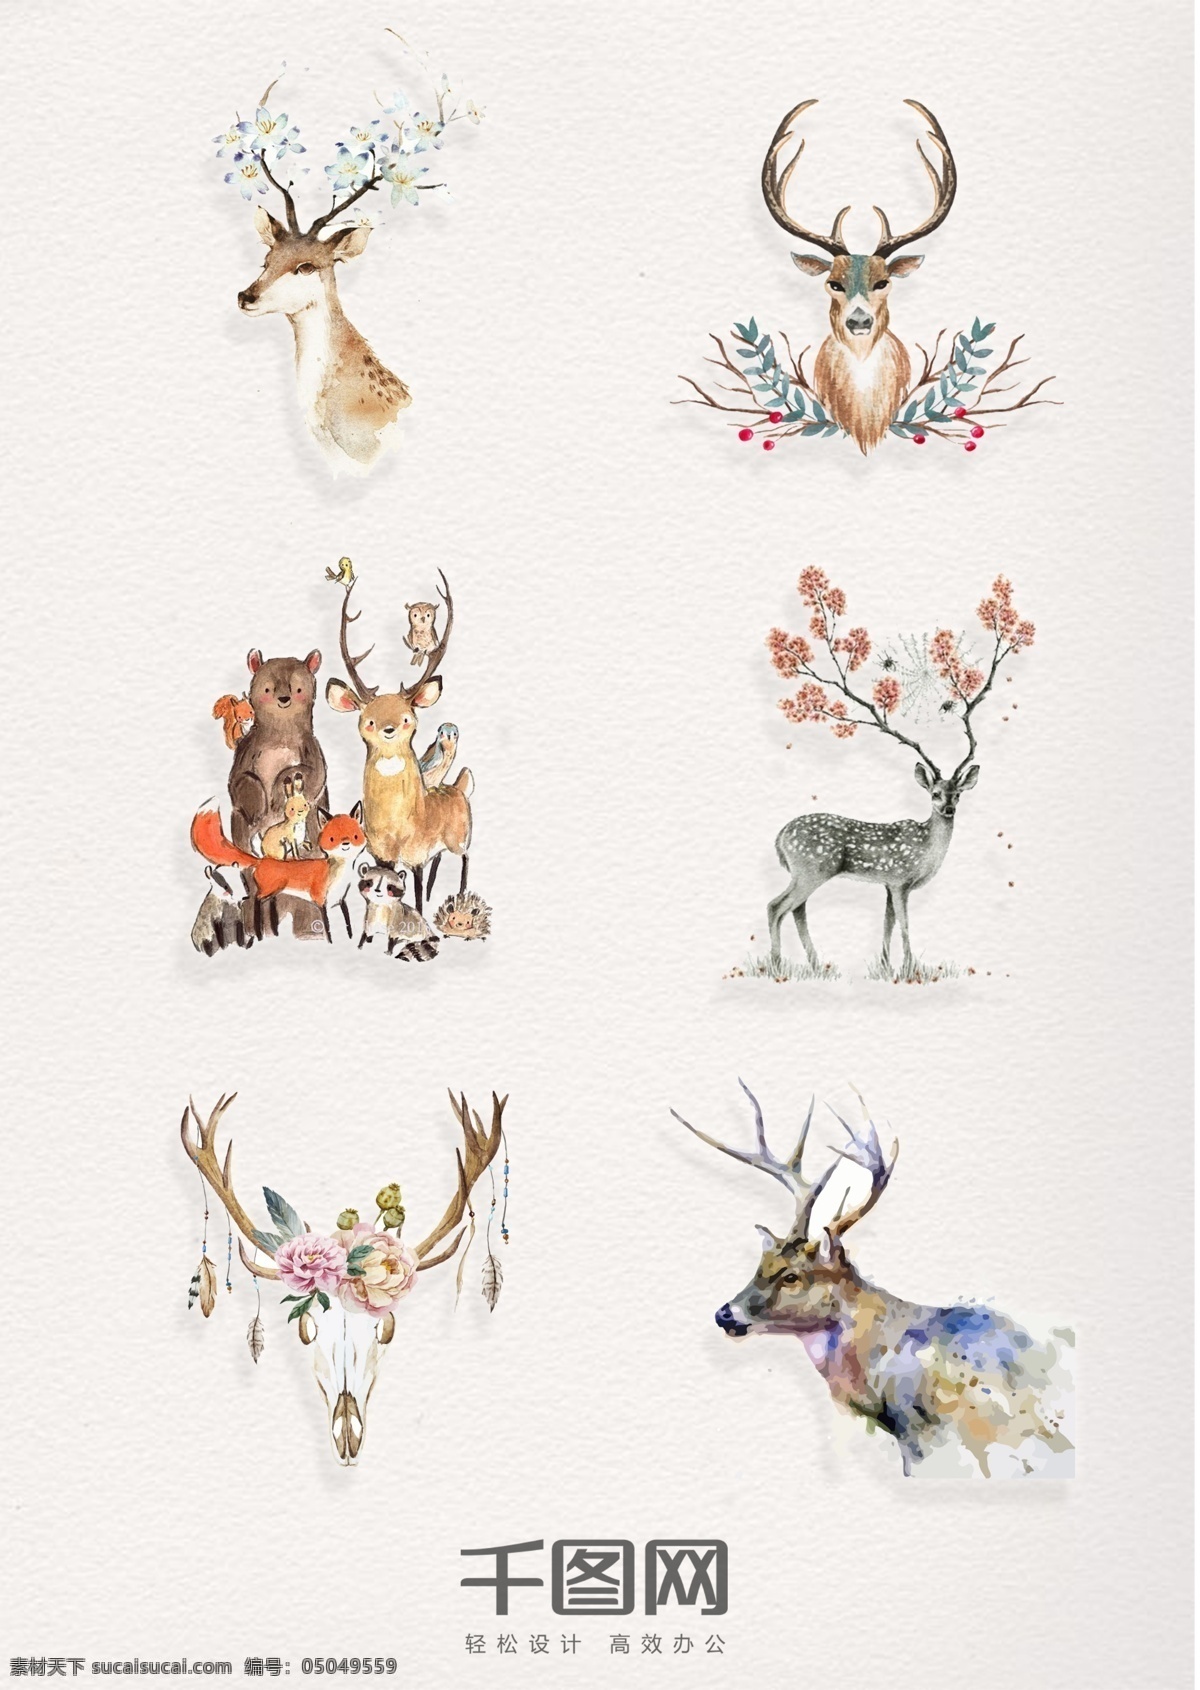 组 精美 水彩 动物 鹿 设计素材 陆地 矢量动物 手绘 装饰 插画 psd素材 小鹿 花卉